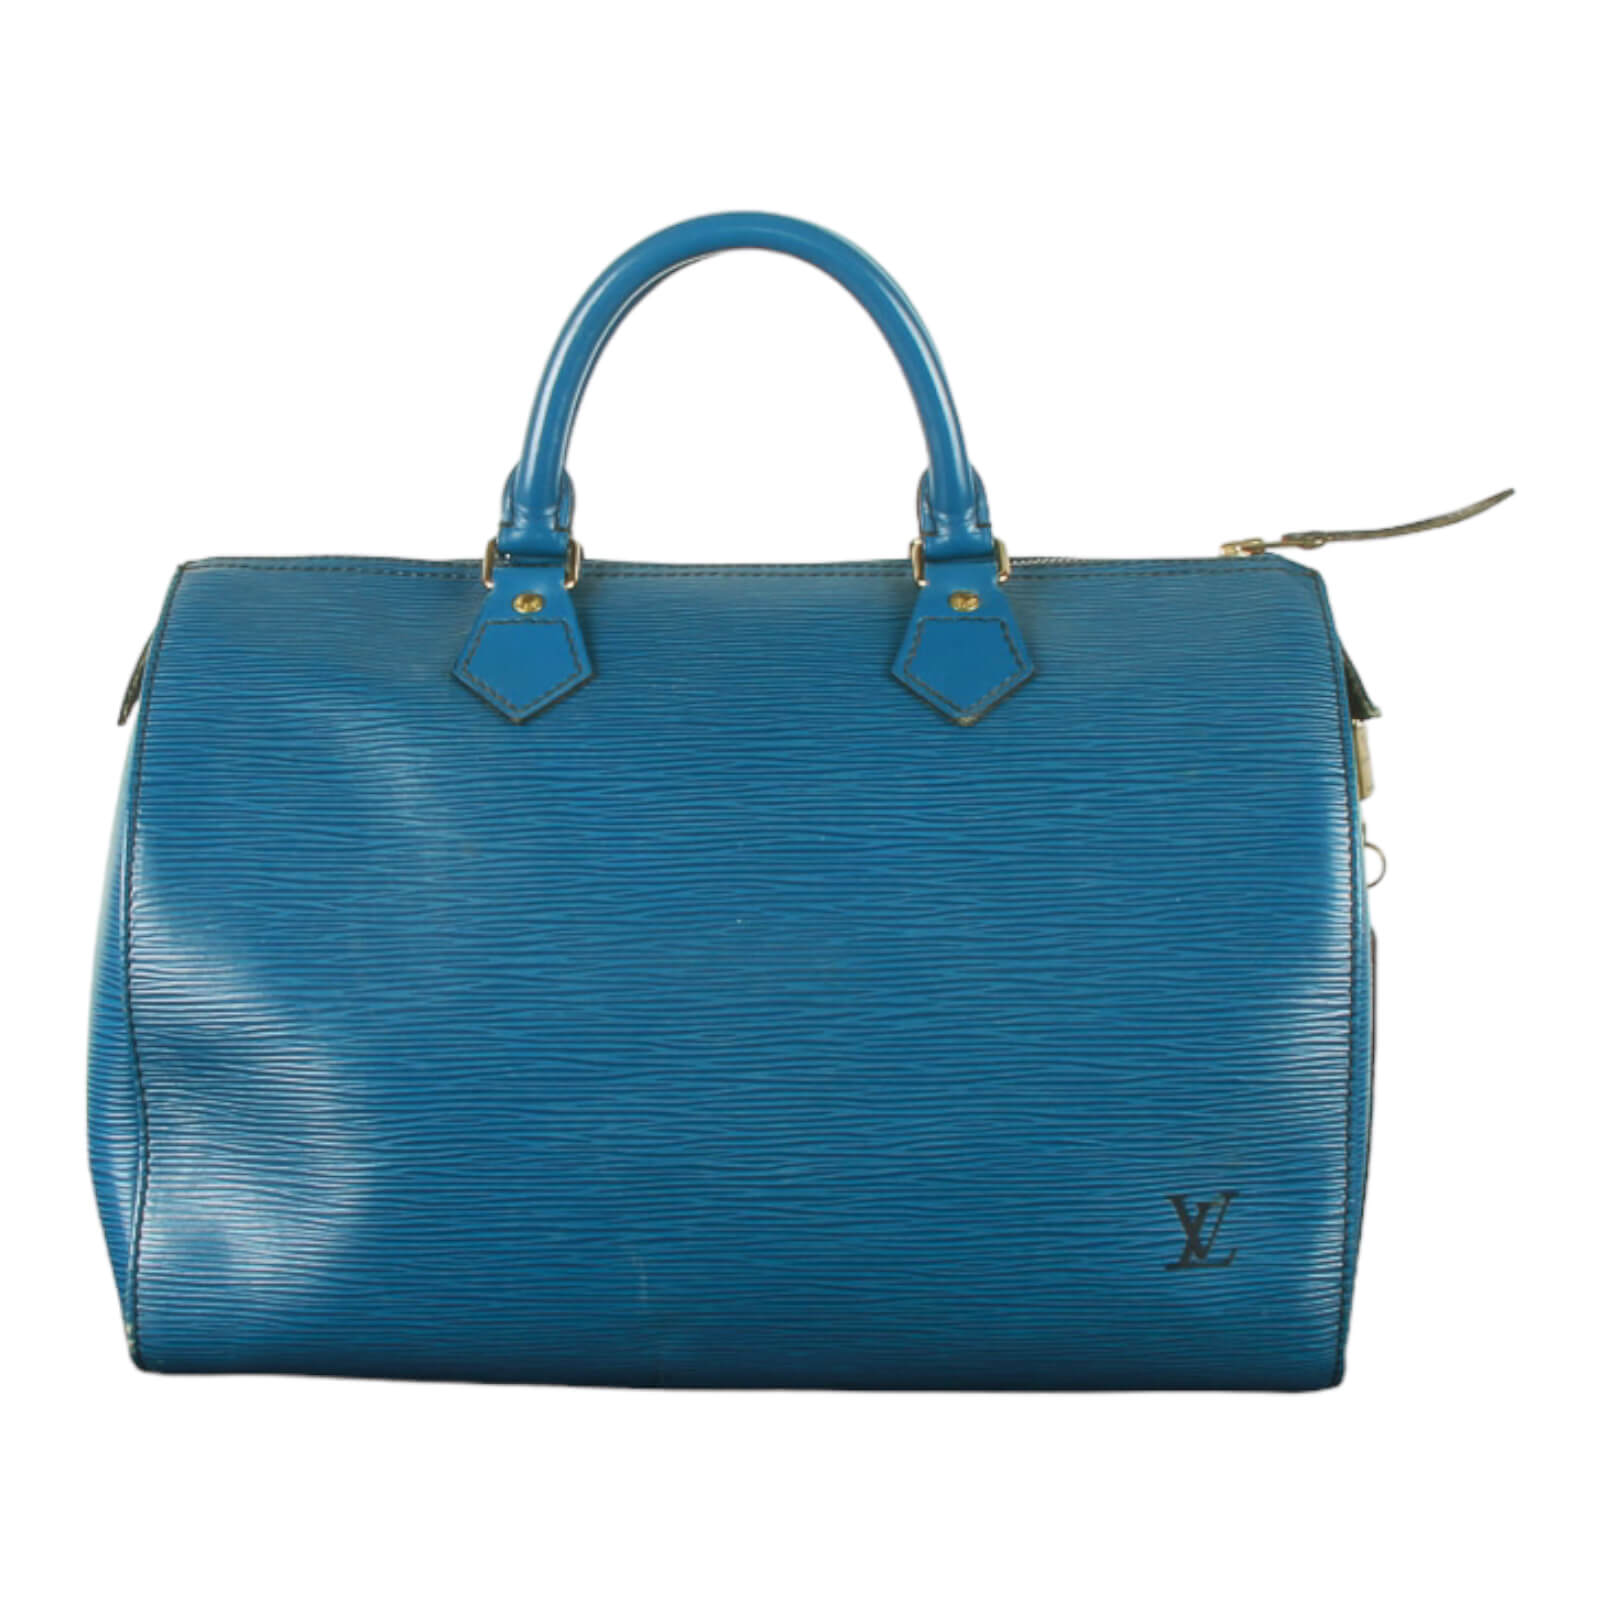 Louis Vuitton Vintage - Epi Speedy 35 - Green - Leather Handbag